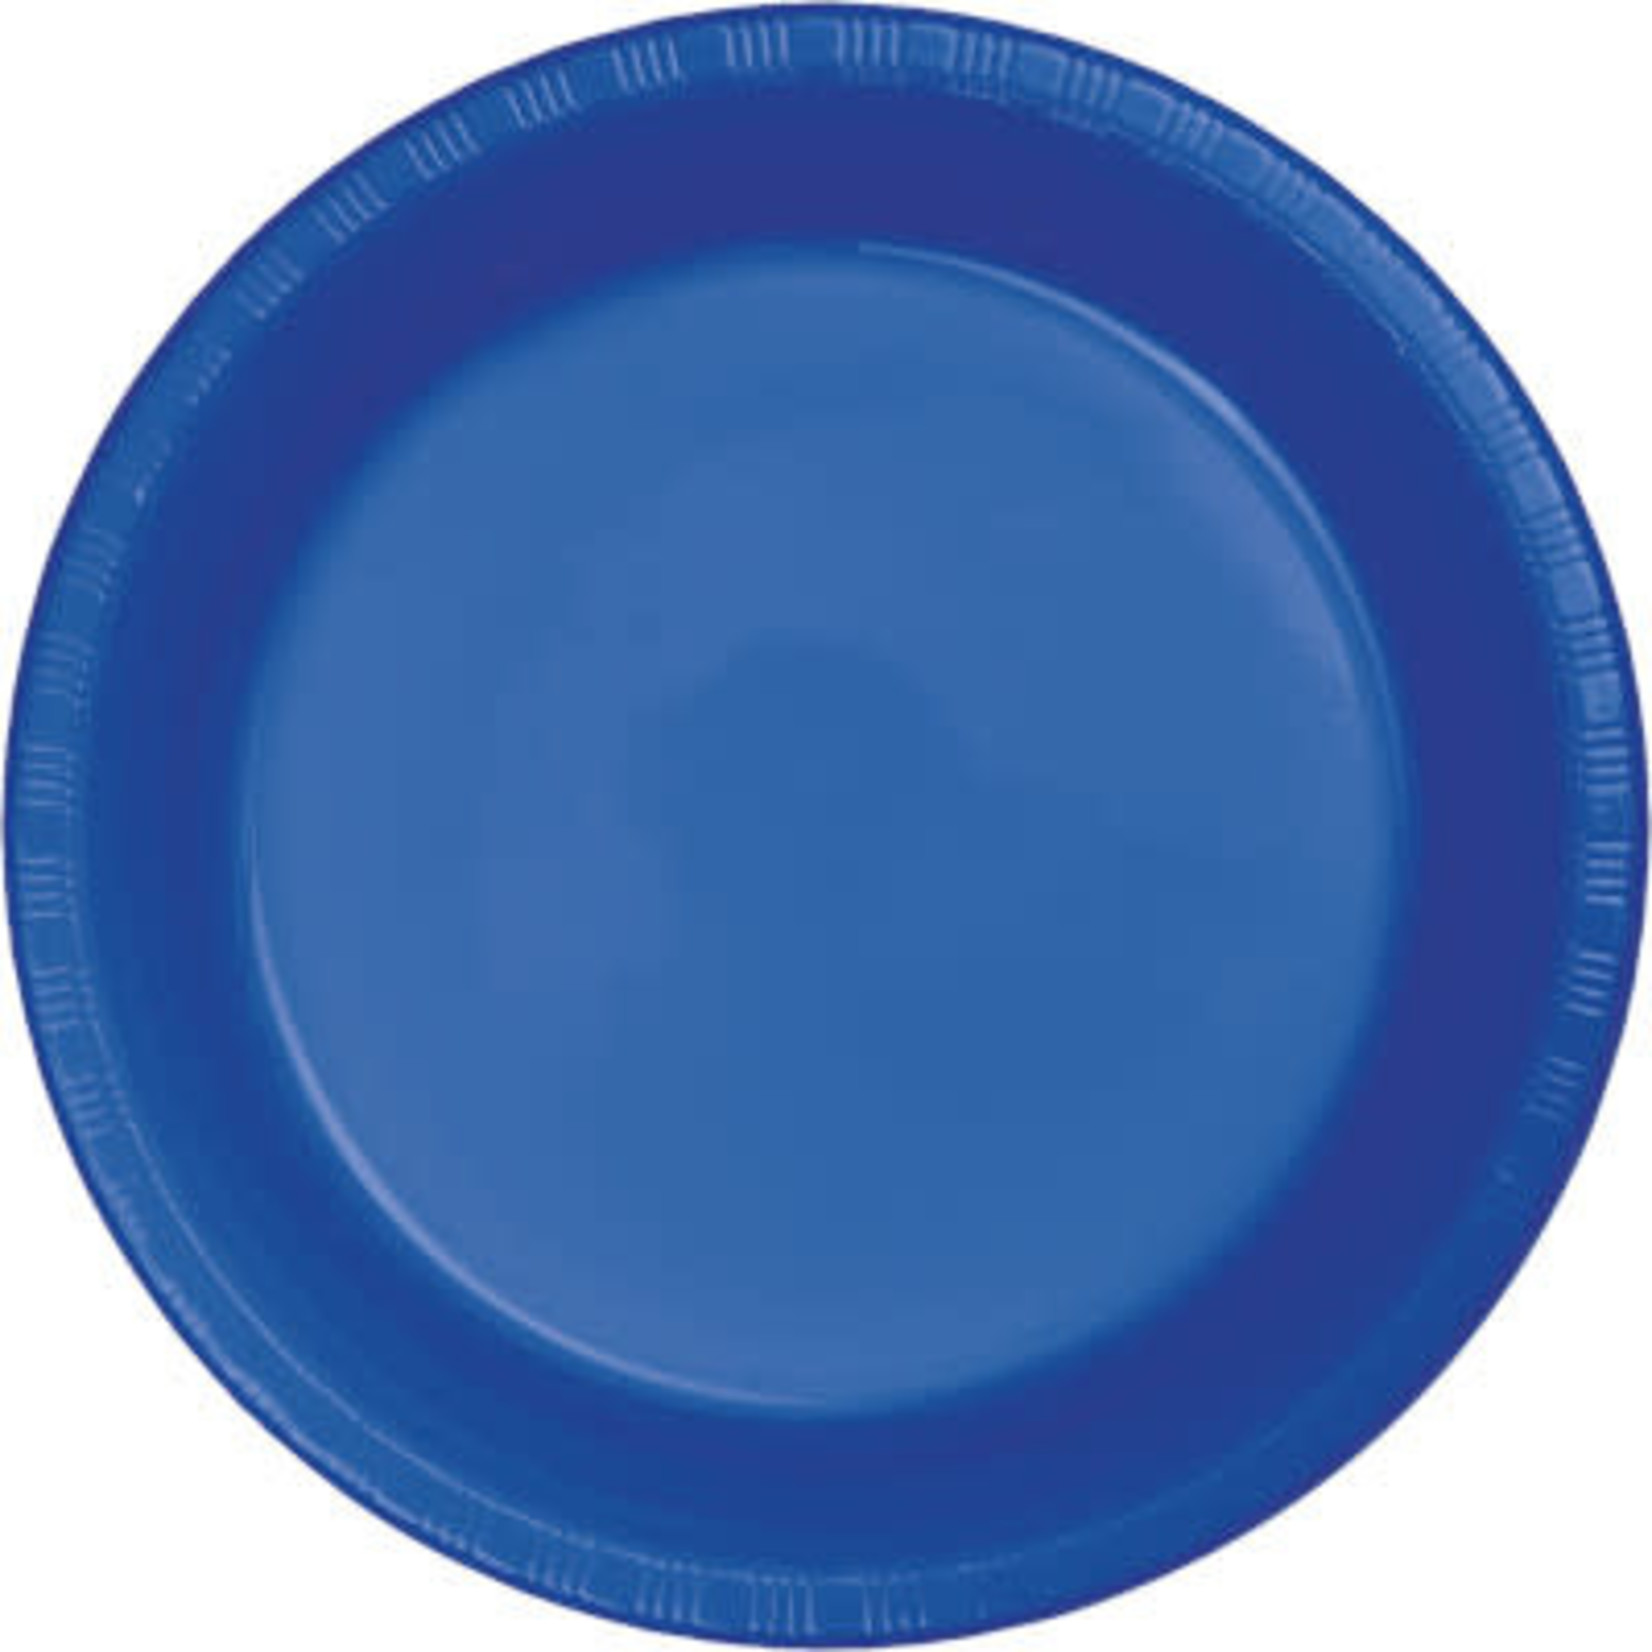 Touch of Color 7" Cobalt Blue Plastic Plates - 20ct.